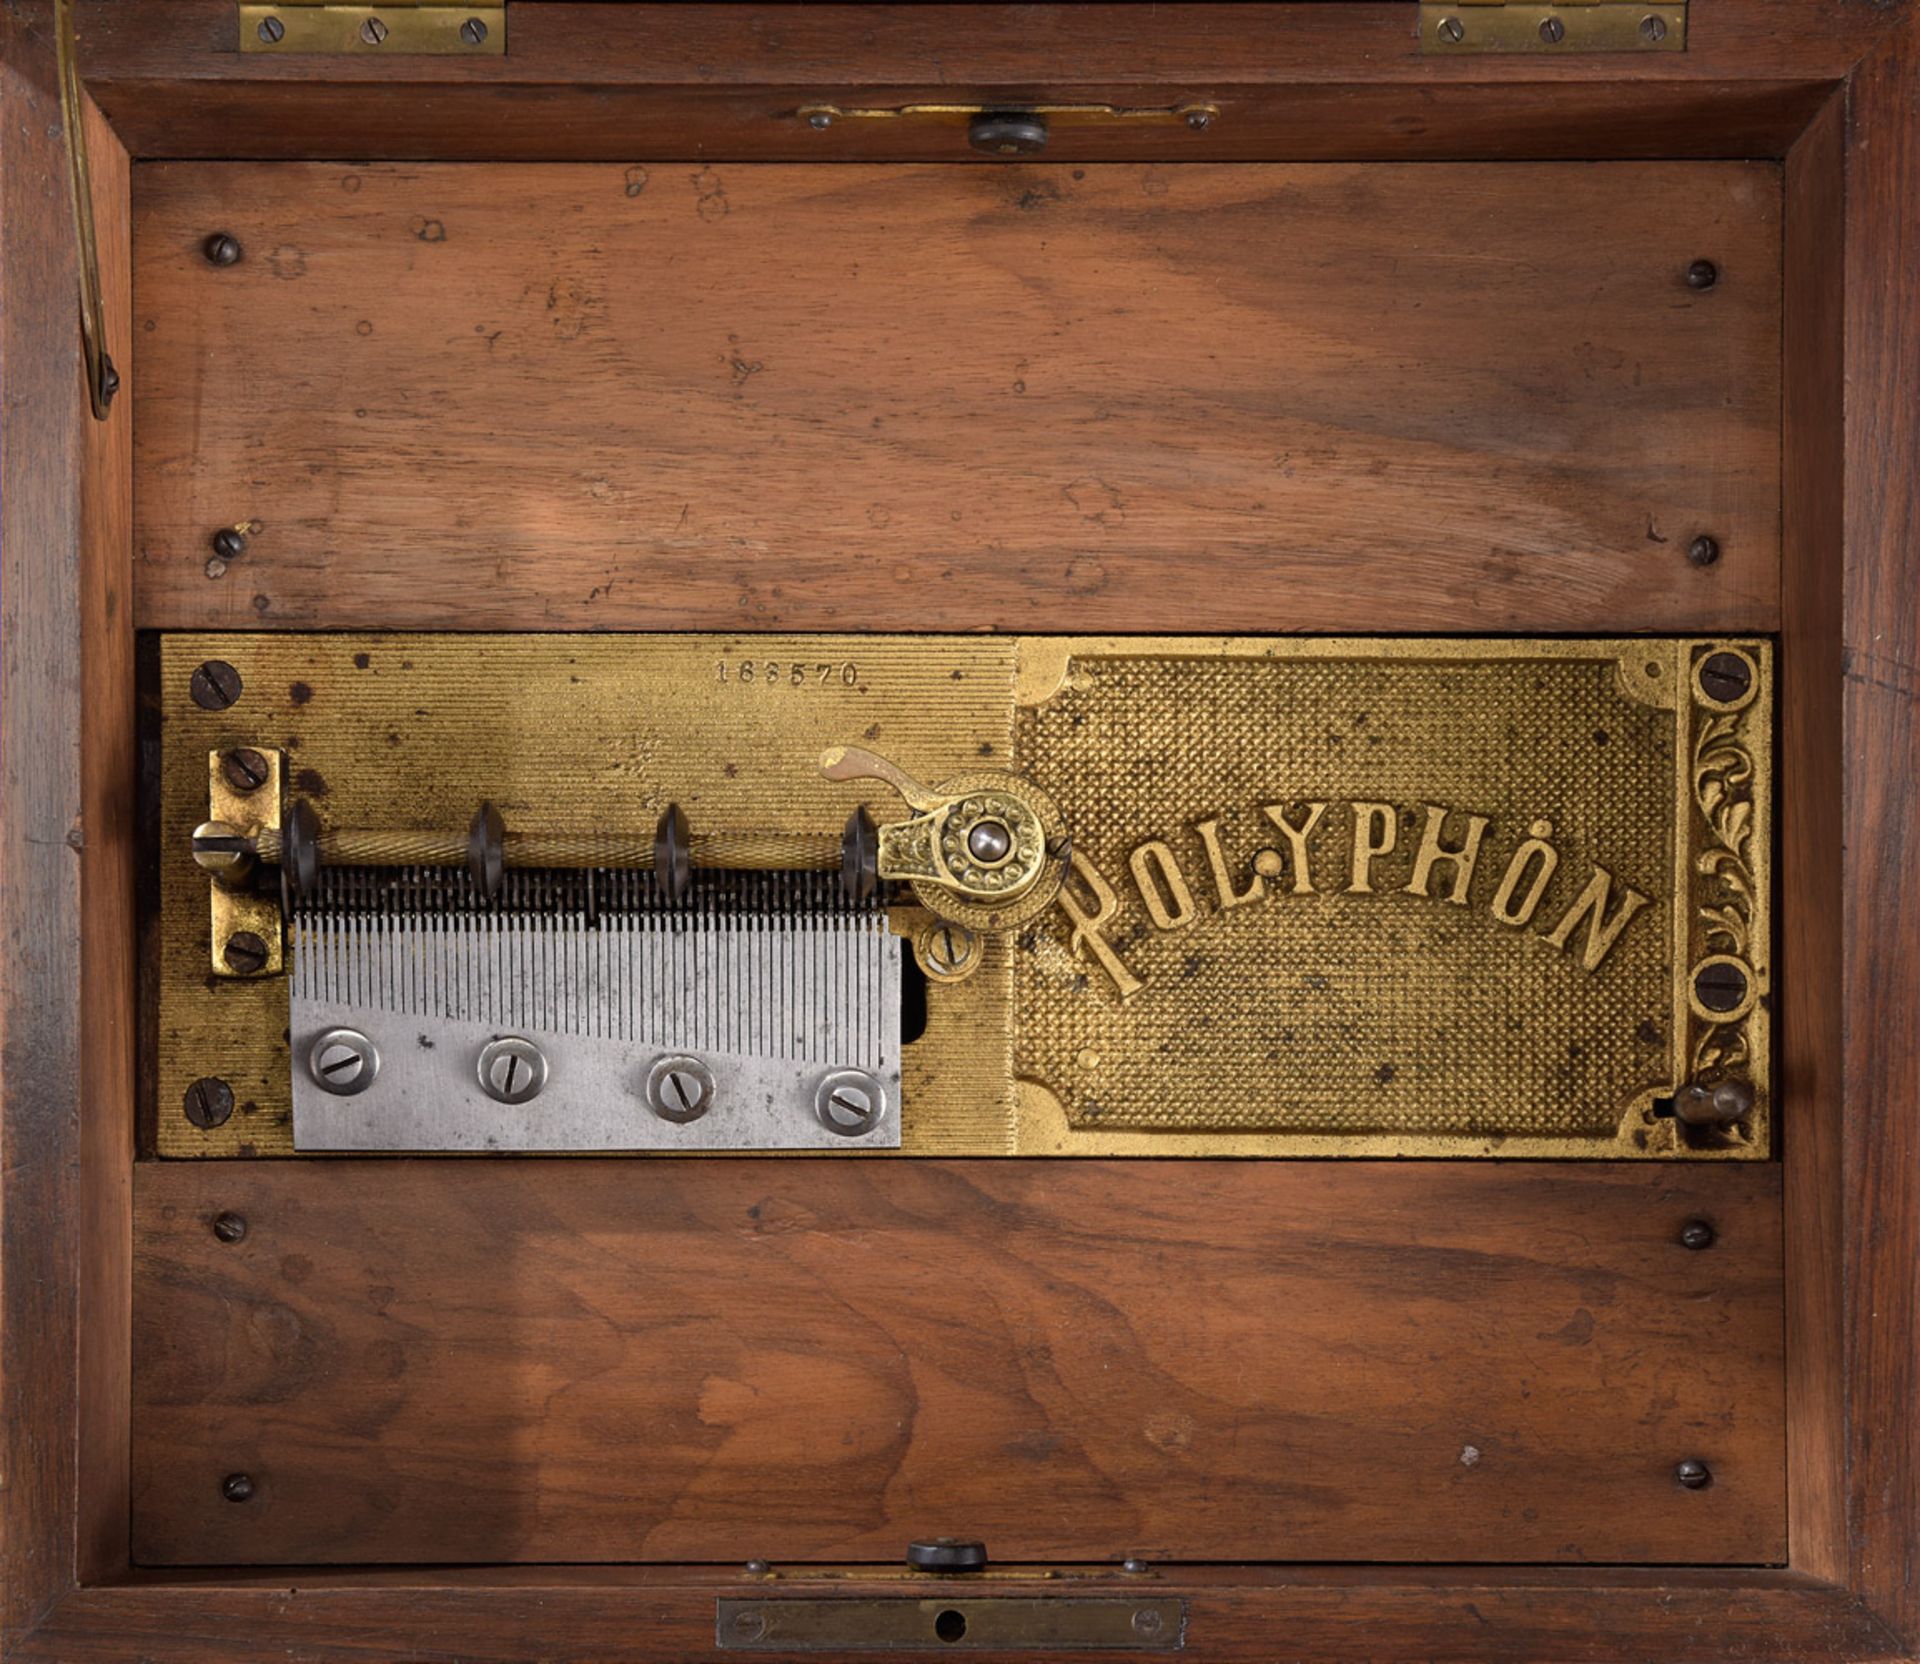 Polyphon-Plattenspieluhr mit 14 Platten Um 1900 - Bild 3 aus 3